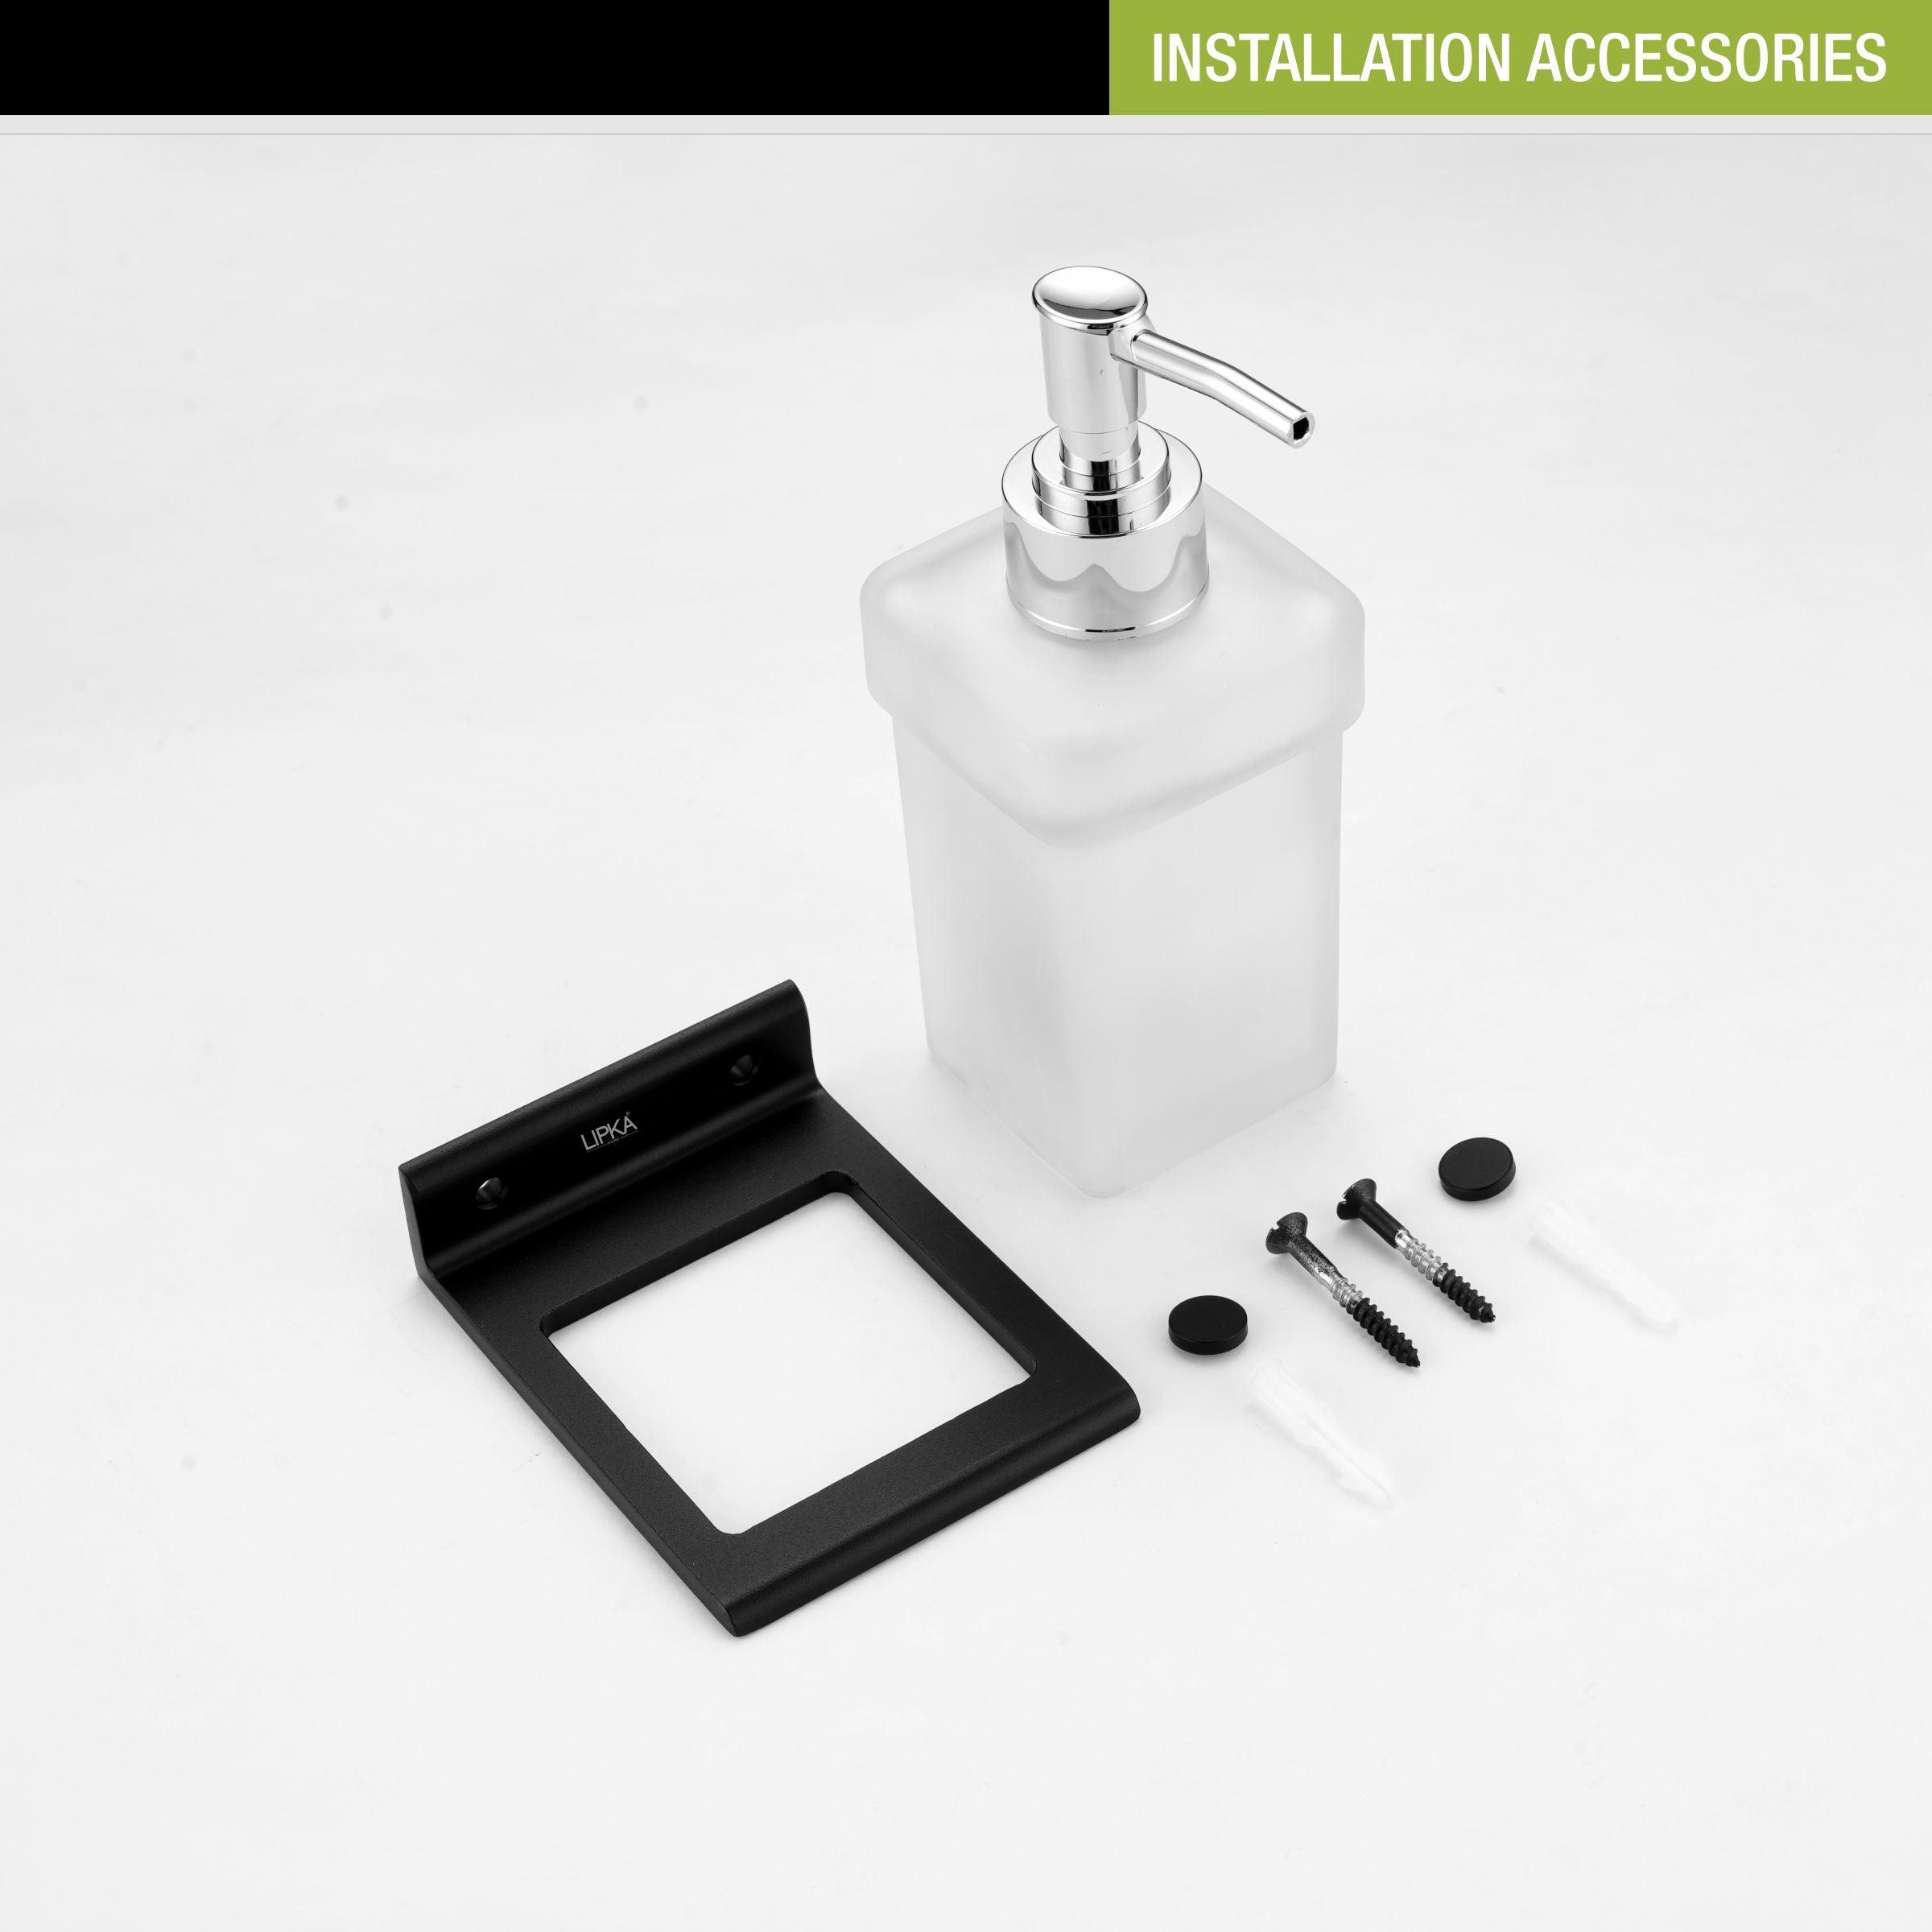 Fire Liquid Soap Dispenser (Space Aluminium) installation accessories